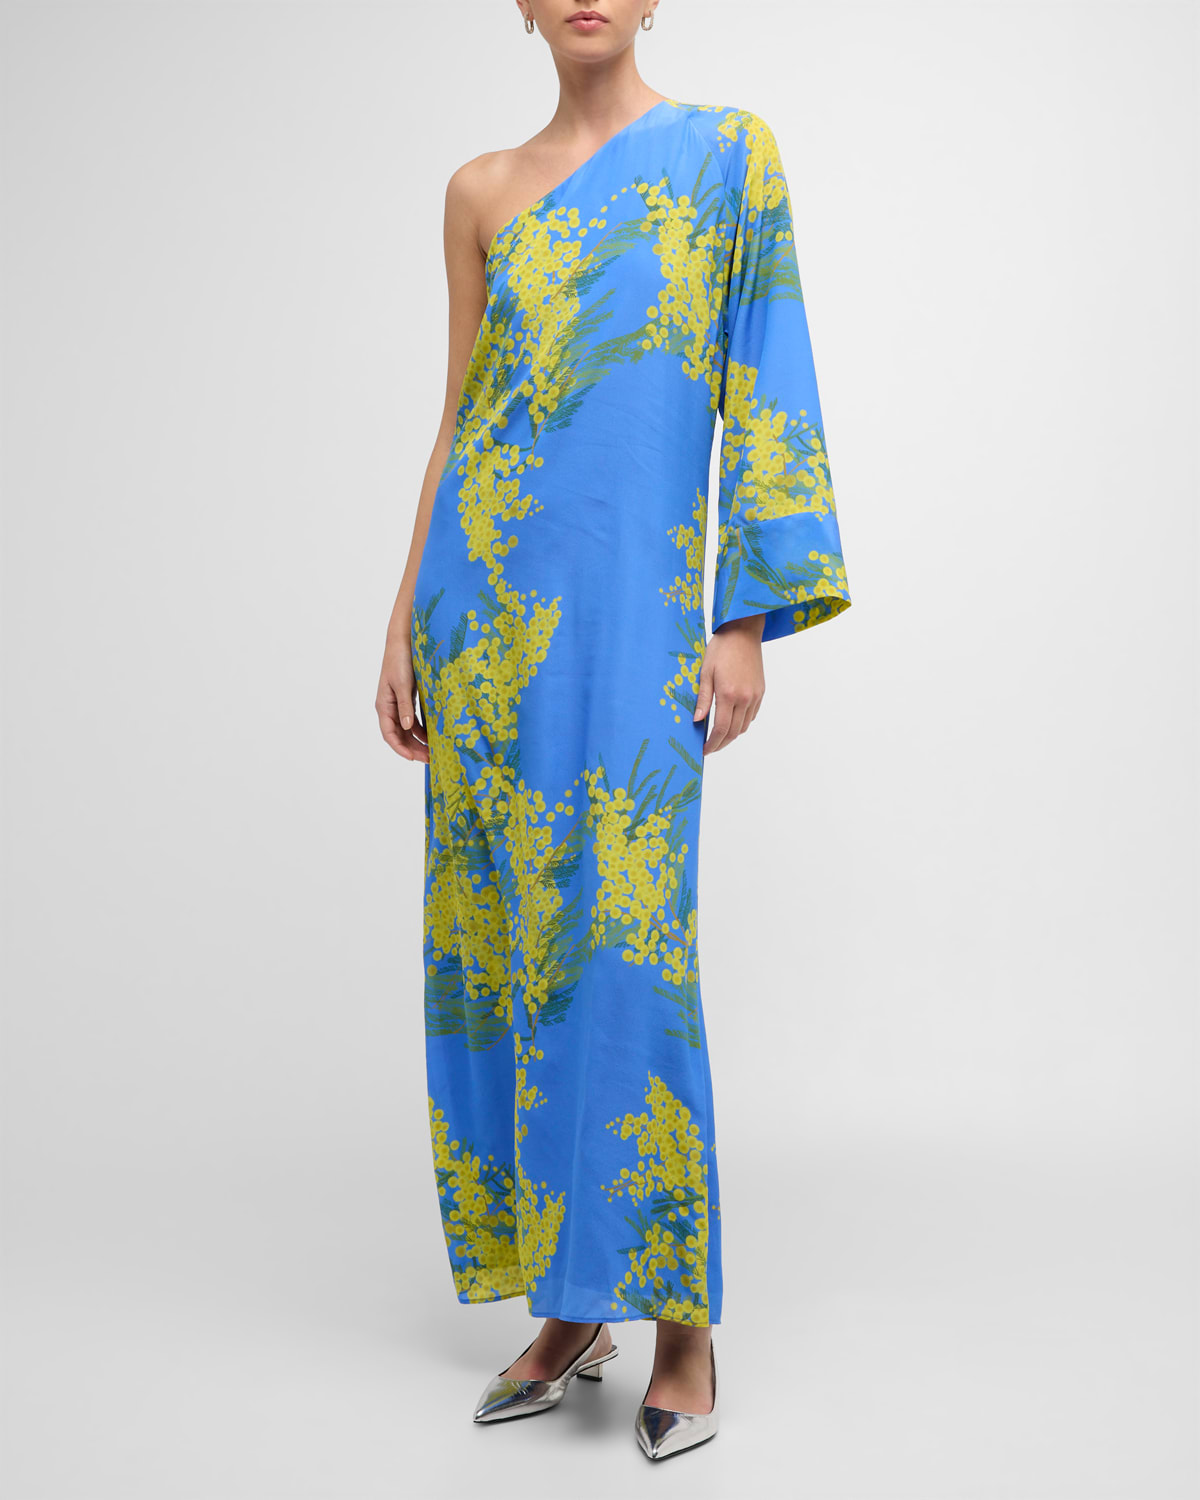 BERNADETTE Lola Floral Print One-Shoulder Maxi Dress